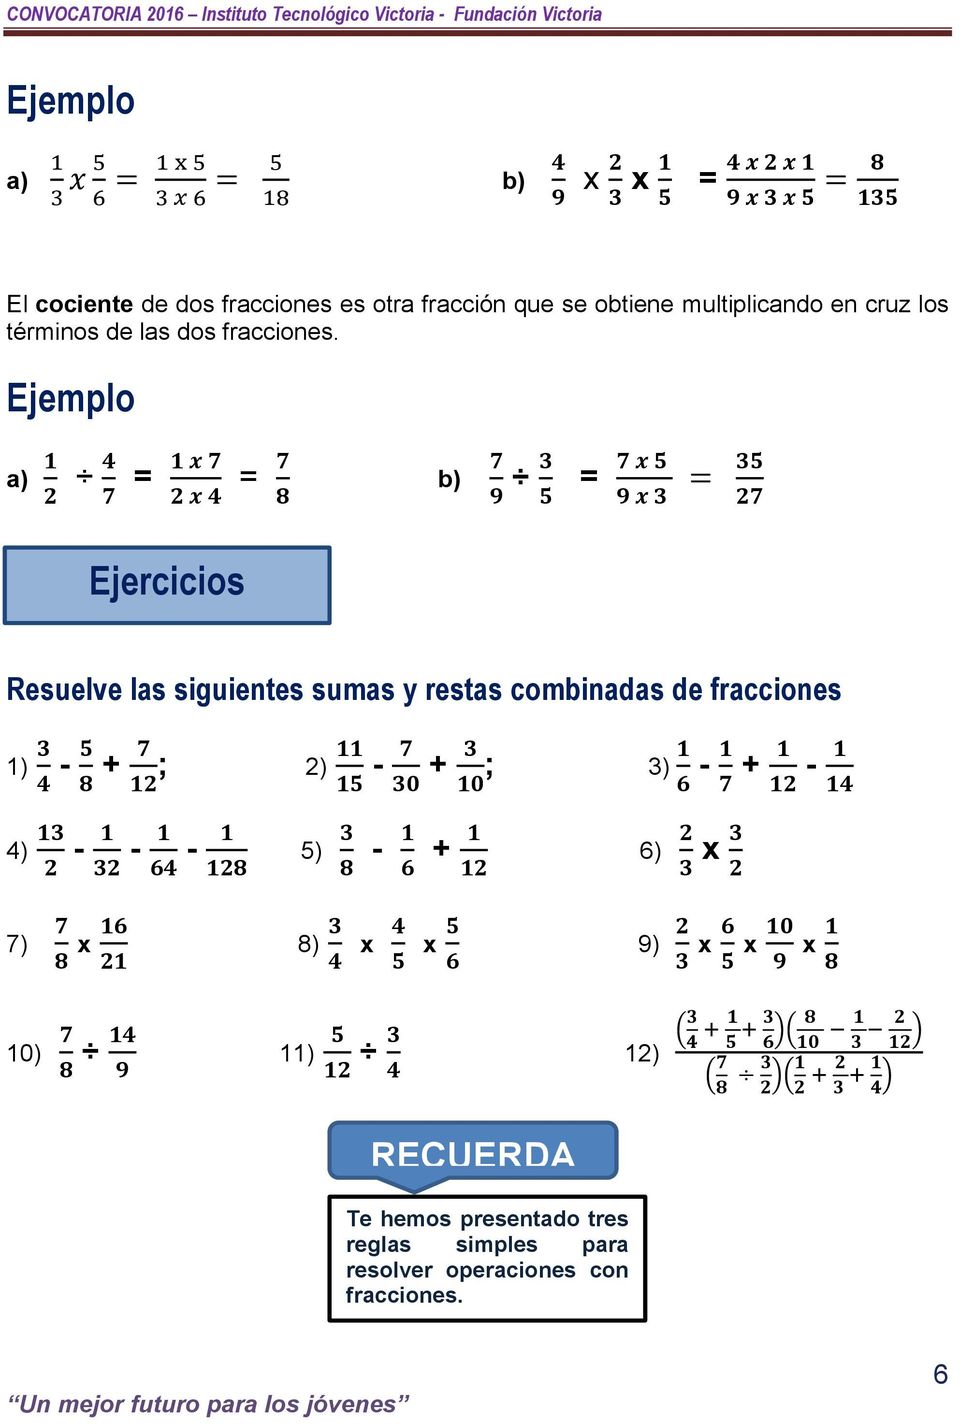 a) 1 2 4 7 = 1 x 7 2 x 4 = 7 8 b) 7 9 3 5 7 x 5 = 9 x 3 = 35 27 Resuelve las siguientes sumas y restas combinadas de fracciones 1) 3 4-5 8 + 7 12 ; 4) 13 2-1 32-1 64-1 128 11